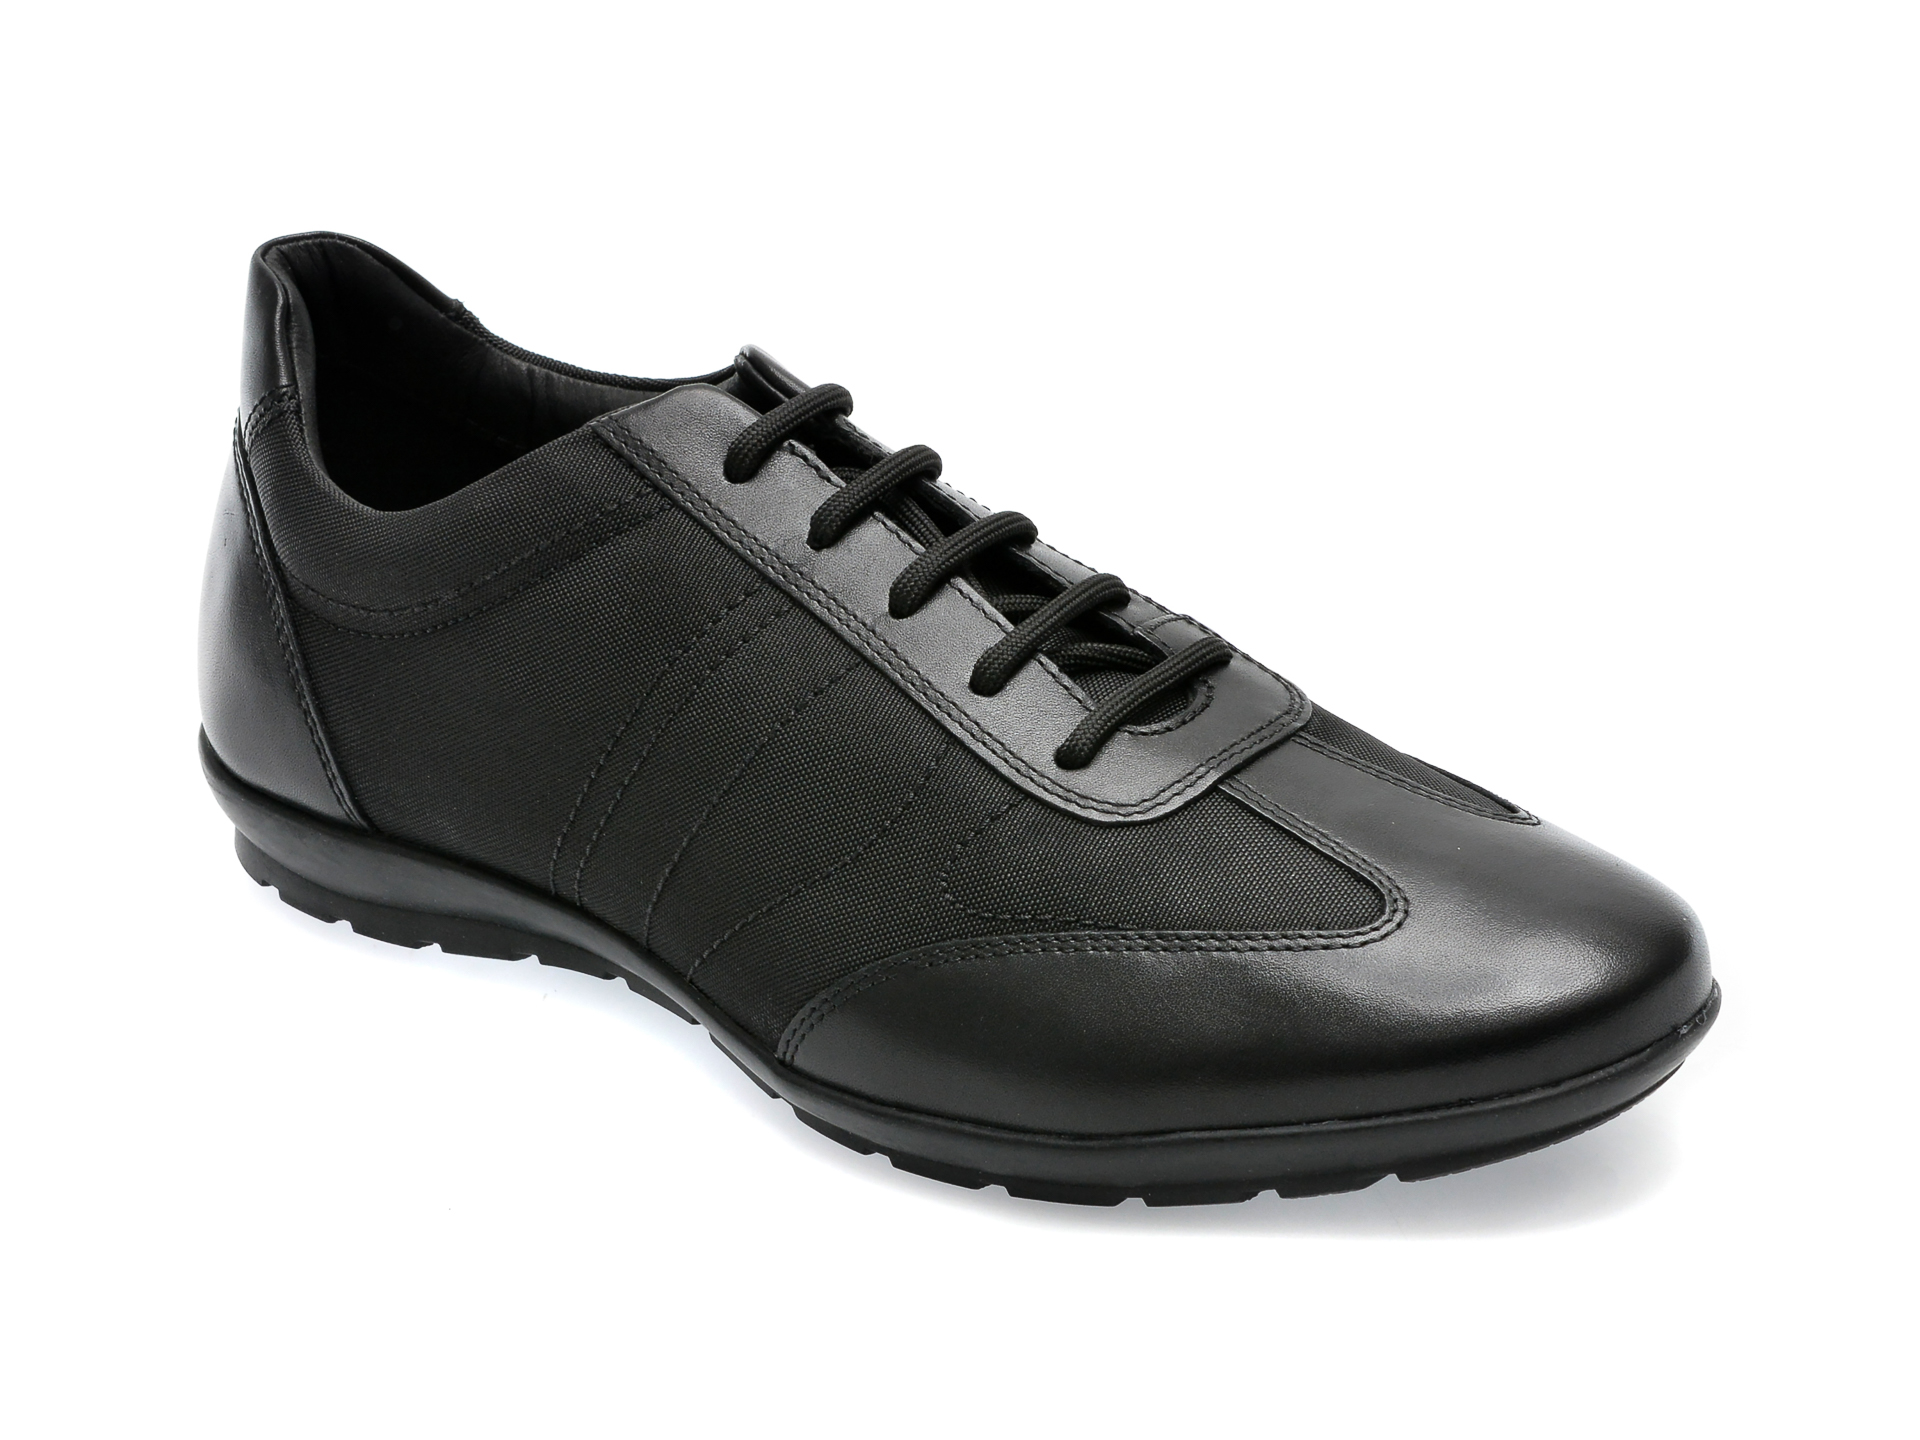 Pantofi GEOX negri, U74A5B, din piele naturala si material textil